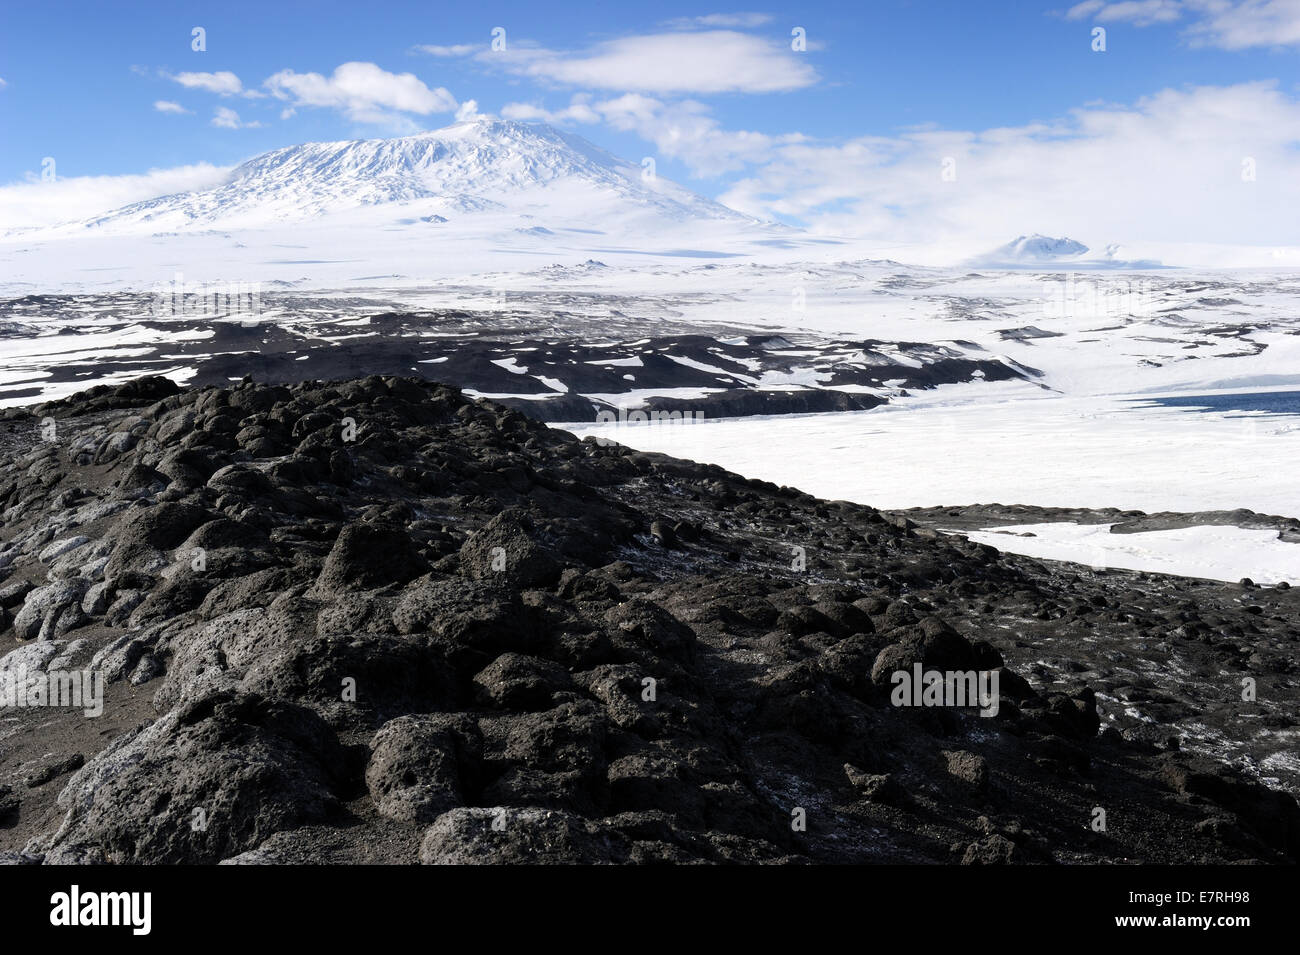 Vista sul Monte Erebus con paesaggio vulcanico in primo piano, Cape Royds, Antartide. Foto Stock